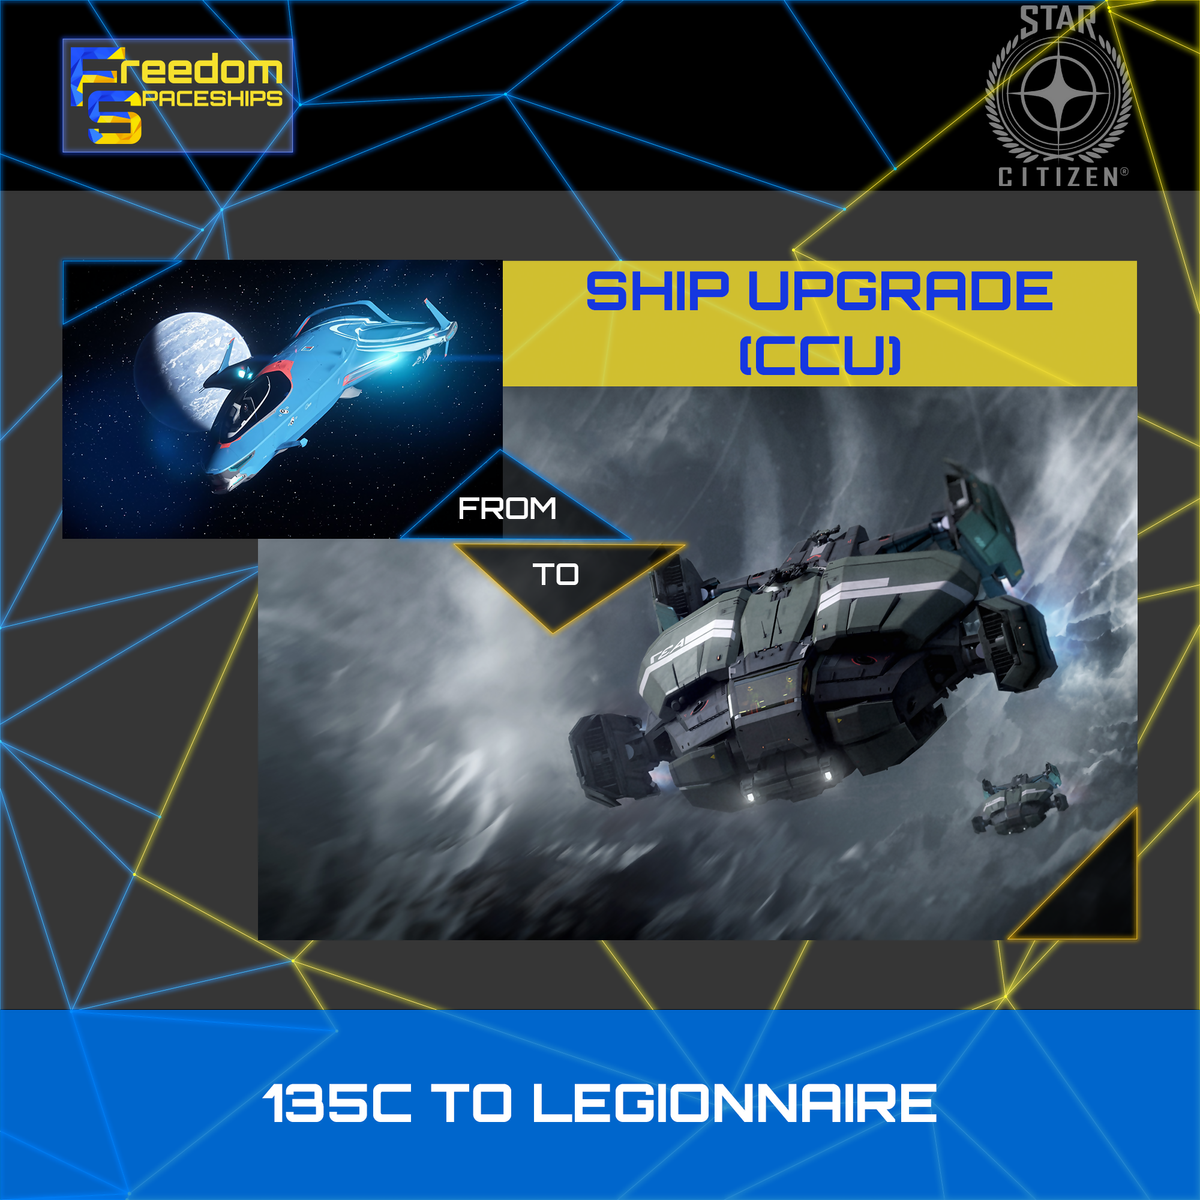 Upgrade - 135C to Legionnaire